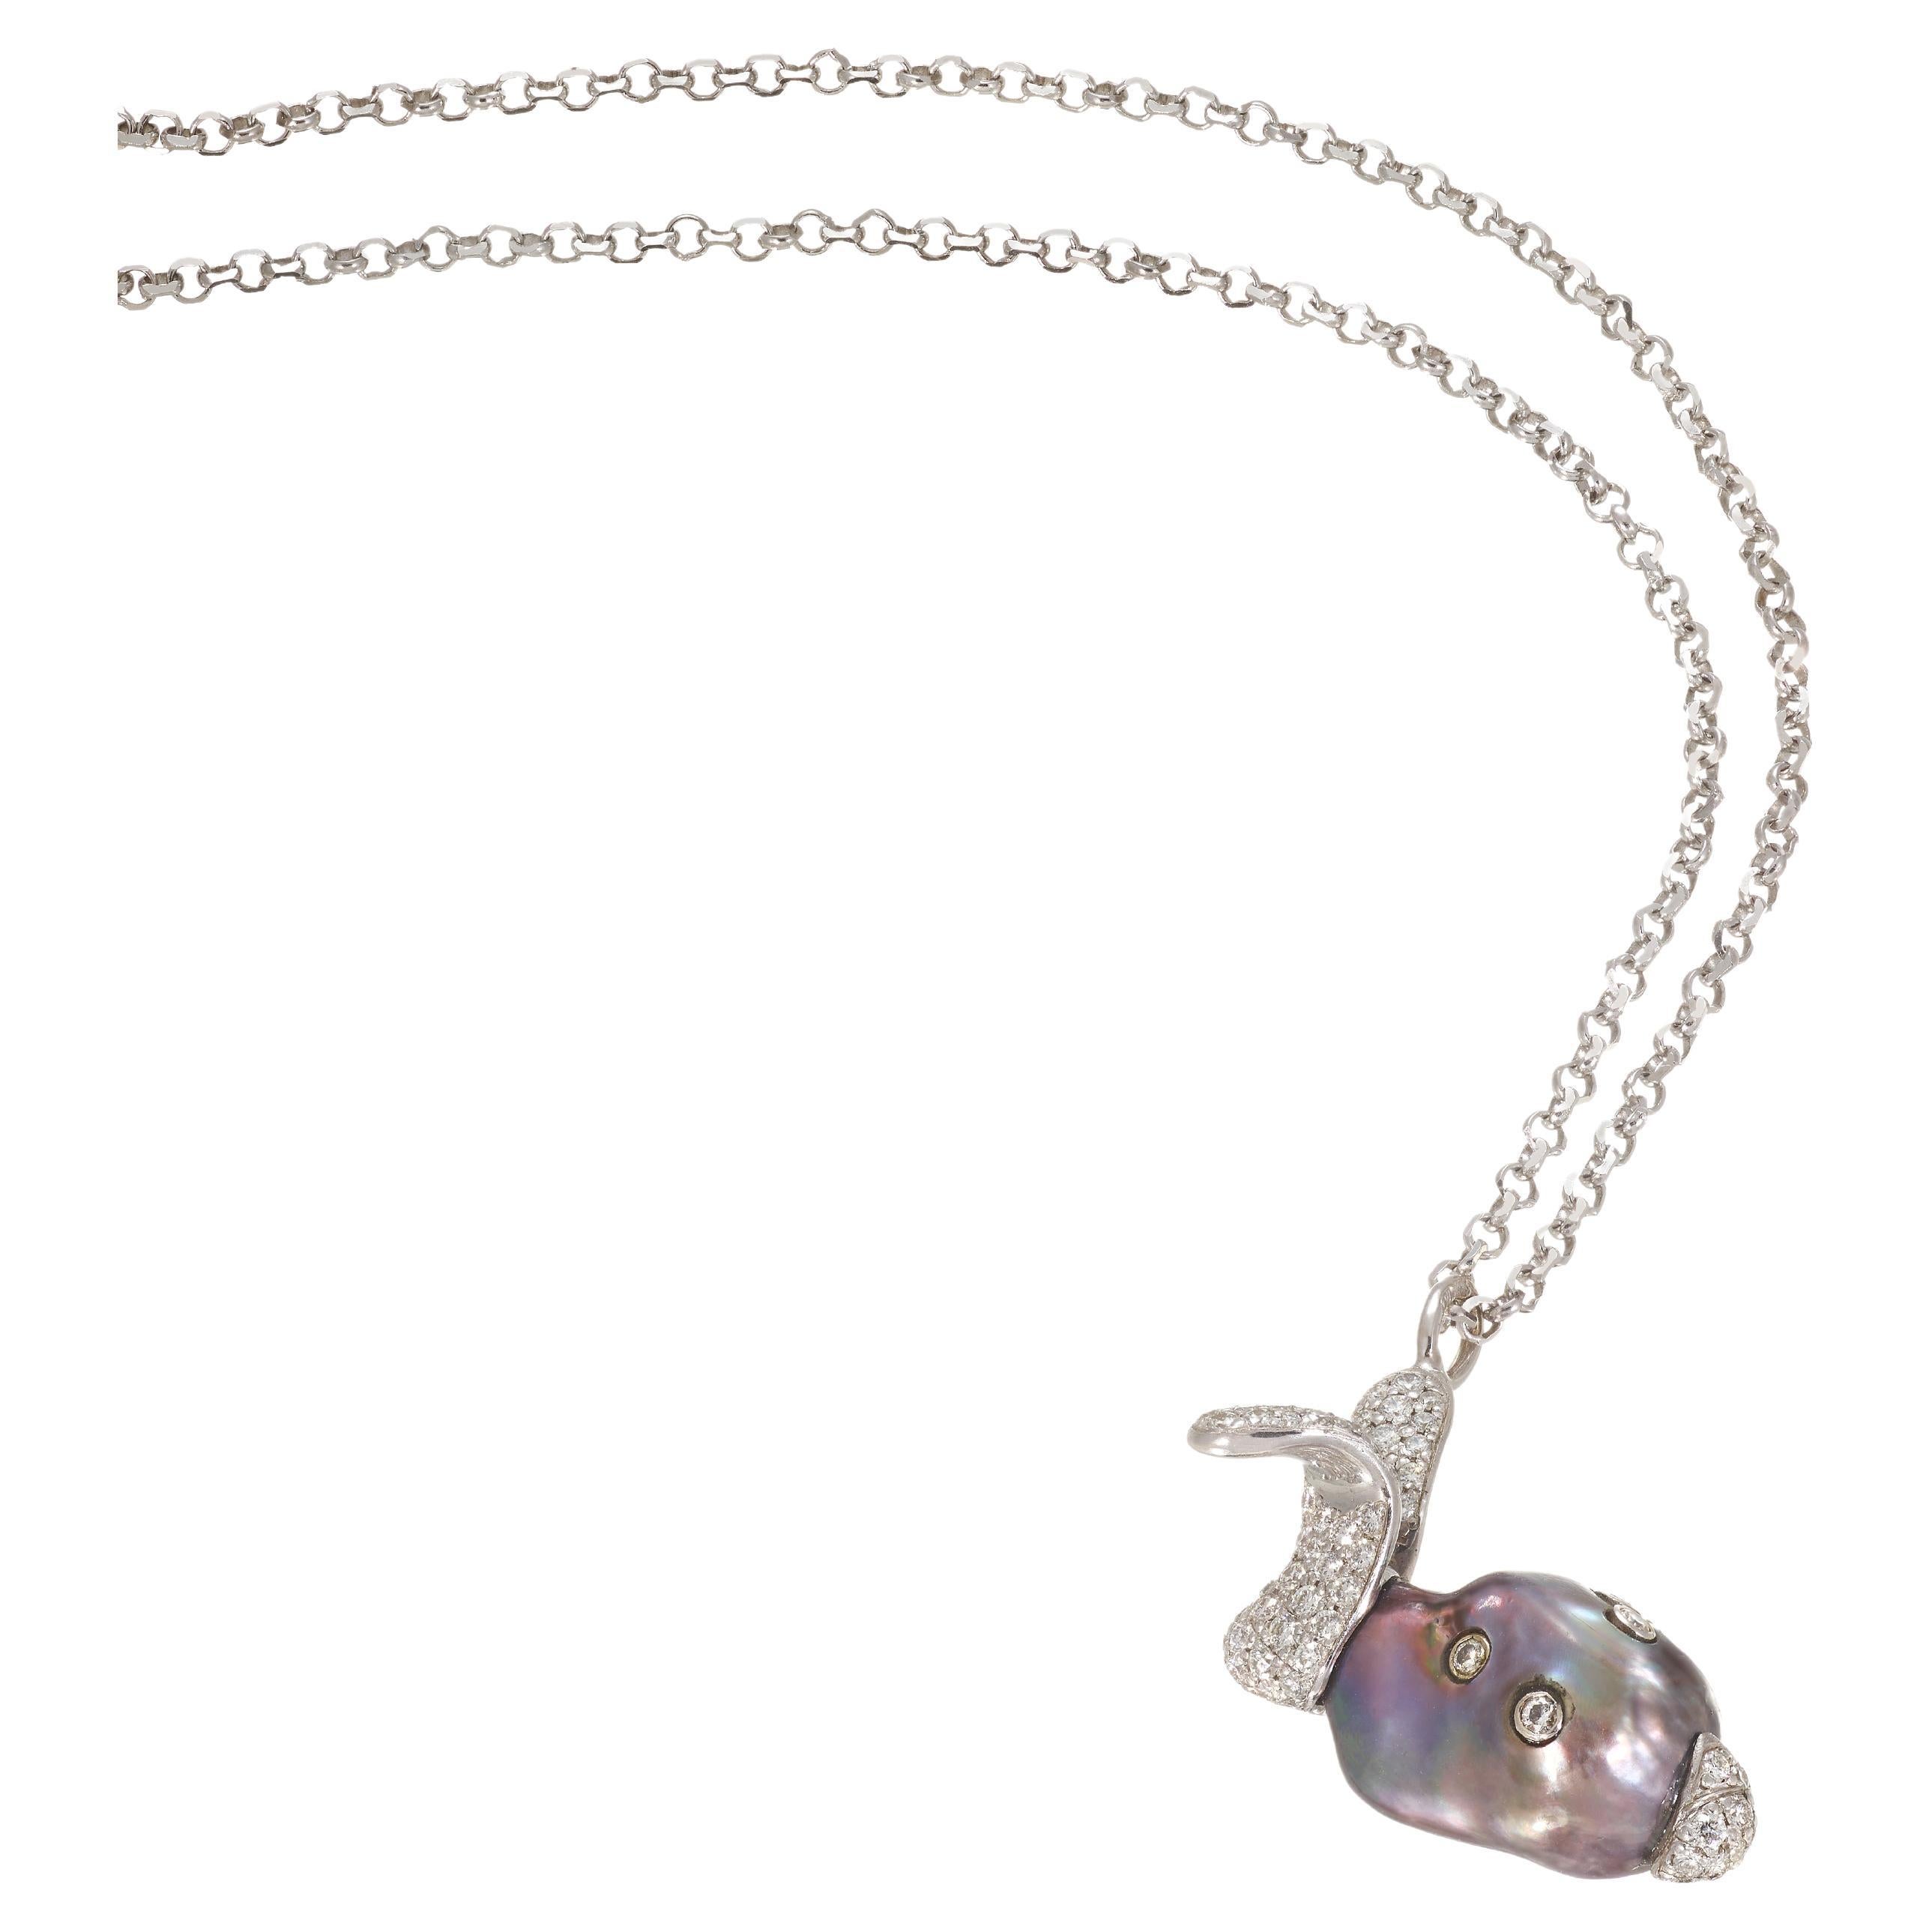 Collier pendentif "Rabbit" en or blanc avec perles noires et diamants